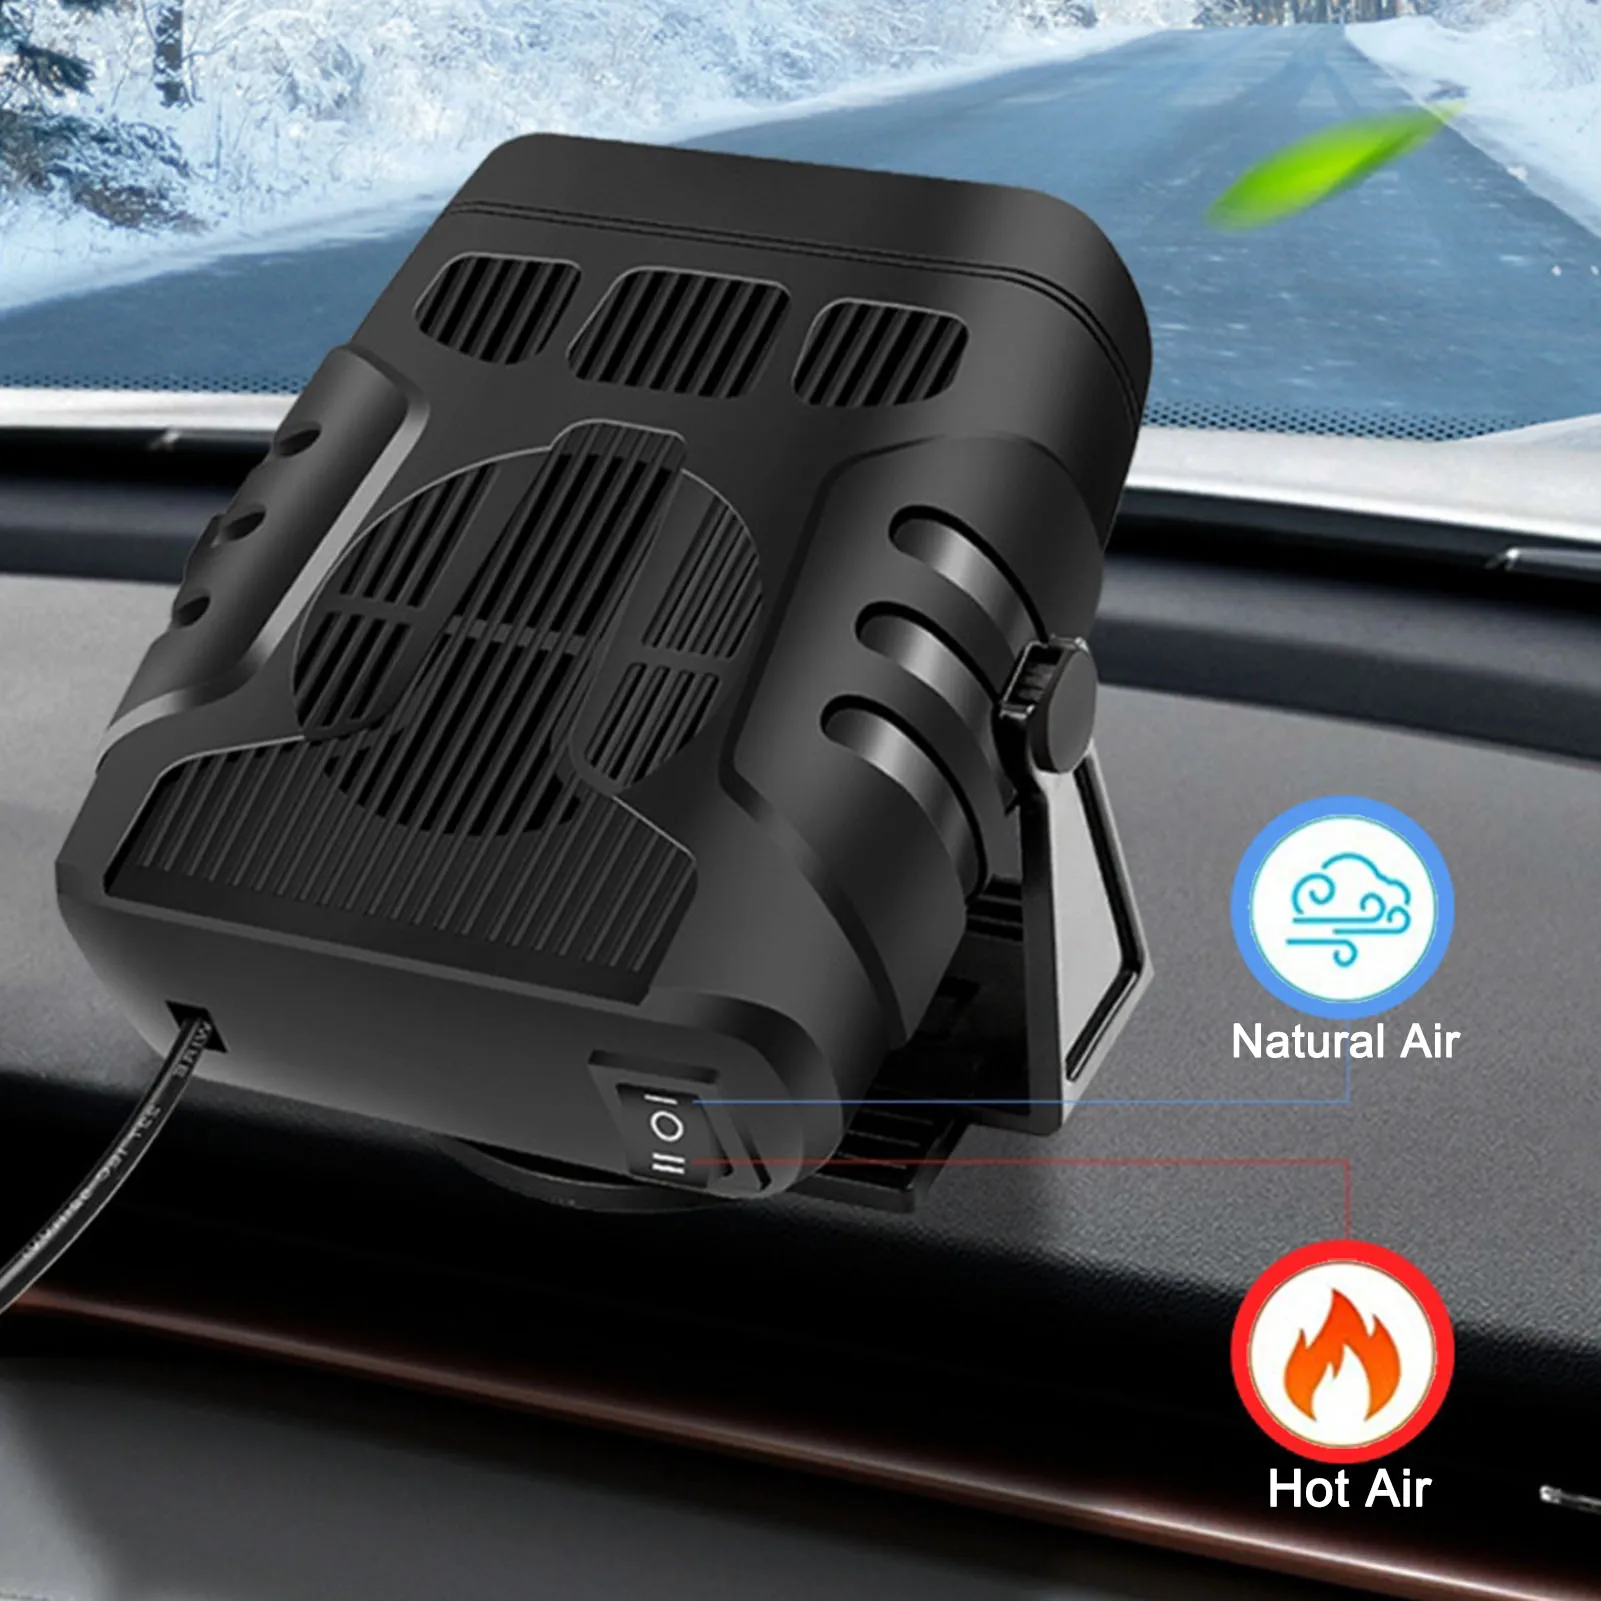 Calentador portátil para descongelar vehículos, dispositivo de calefacción y refrigeración para camiones, 12V/24V